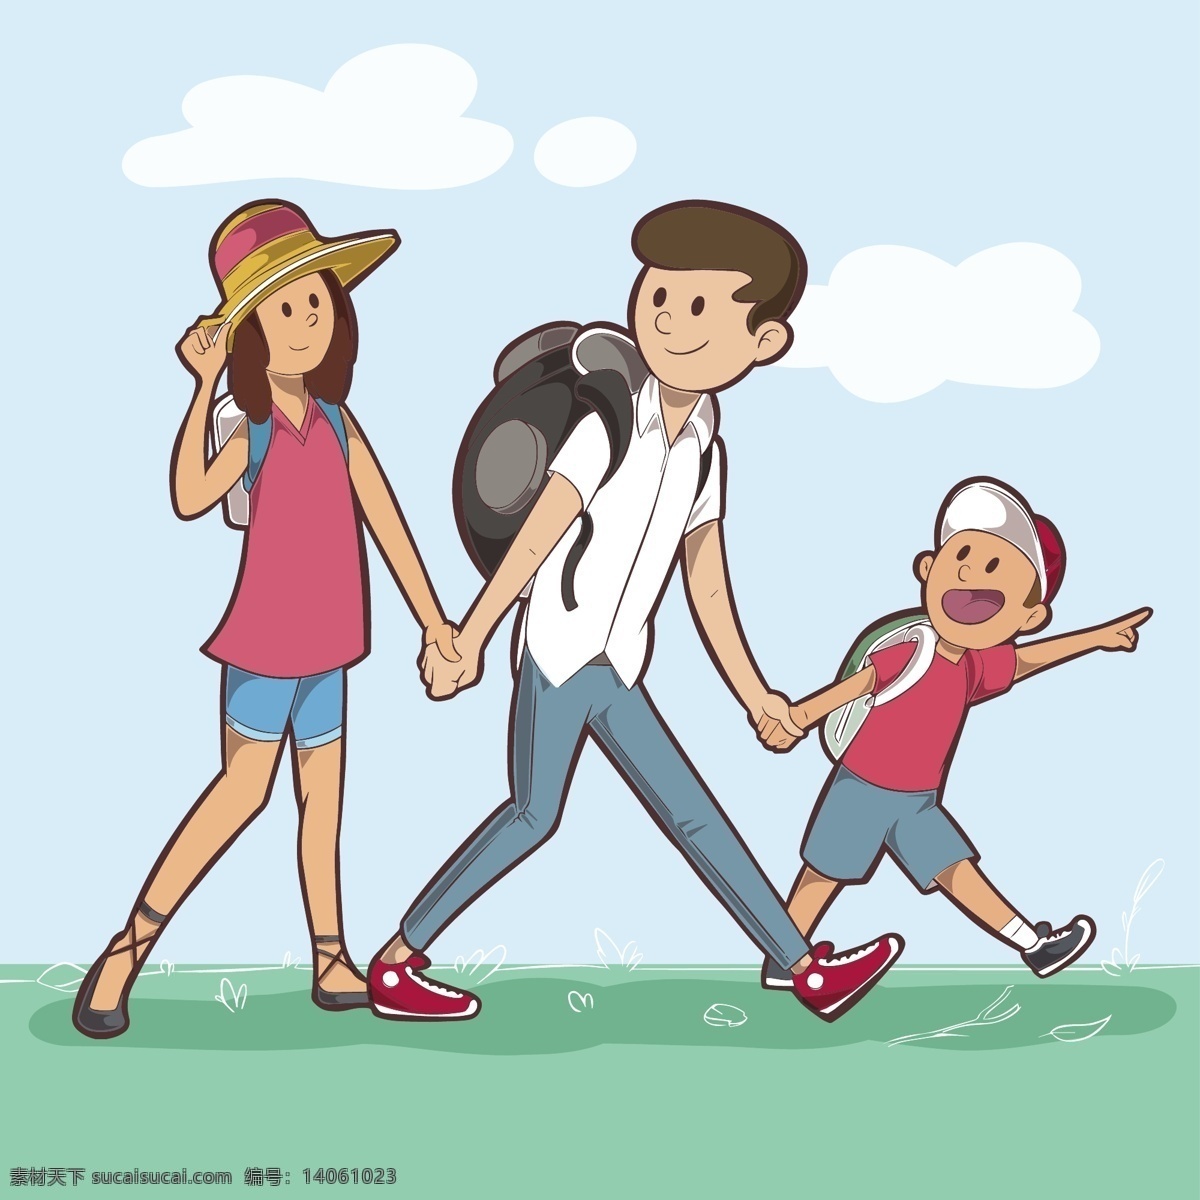 开心 出游 一家 三口 图案 装饰 一家三口 爸爸 妈妈 儿子 旅游 家人出游 eps元素 卡通 亲子游 旅游攻略 扁平化元素